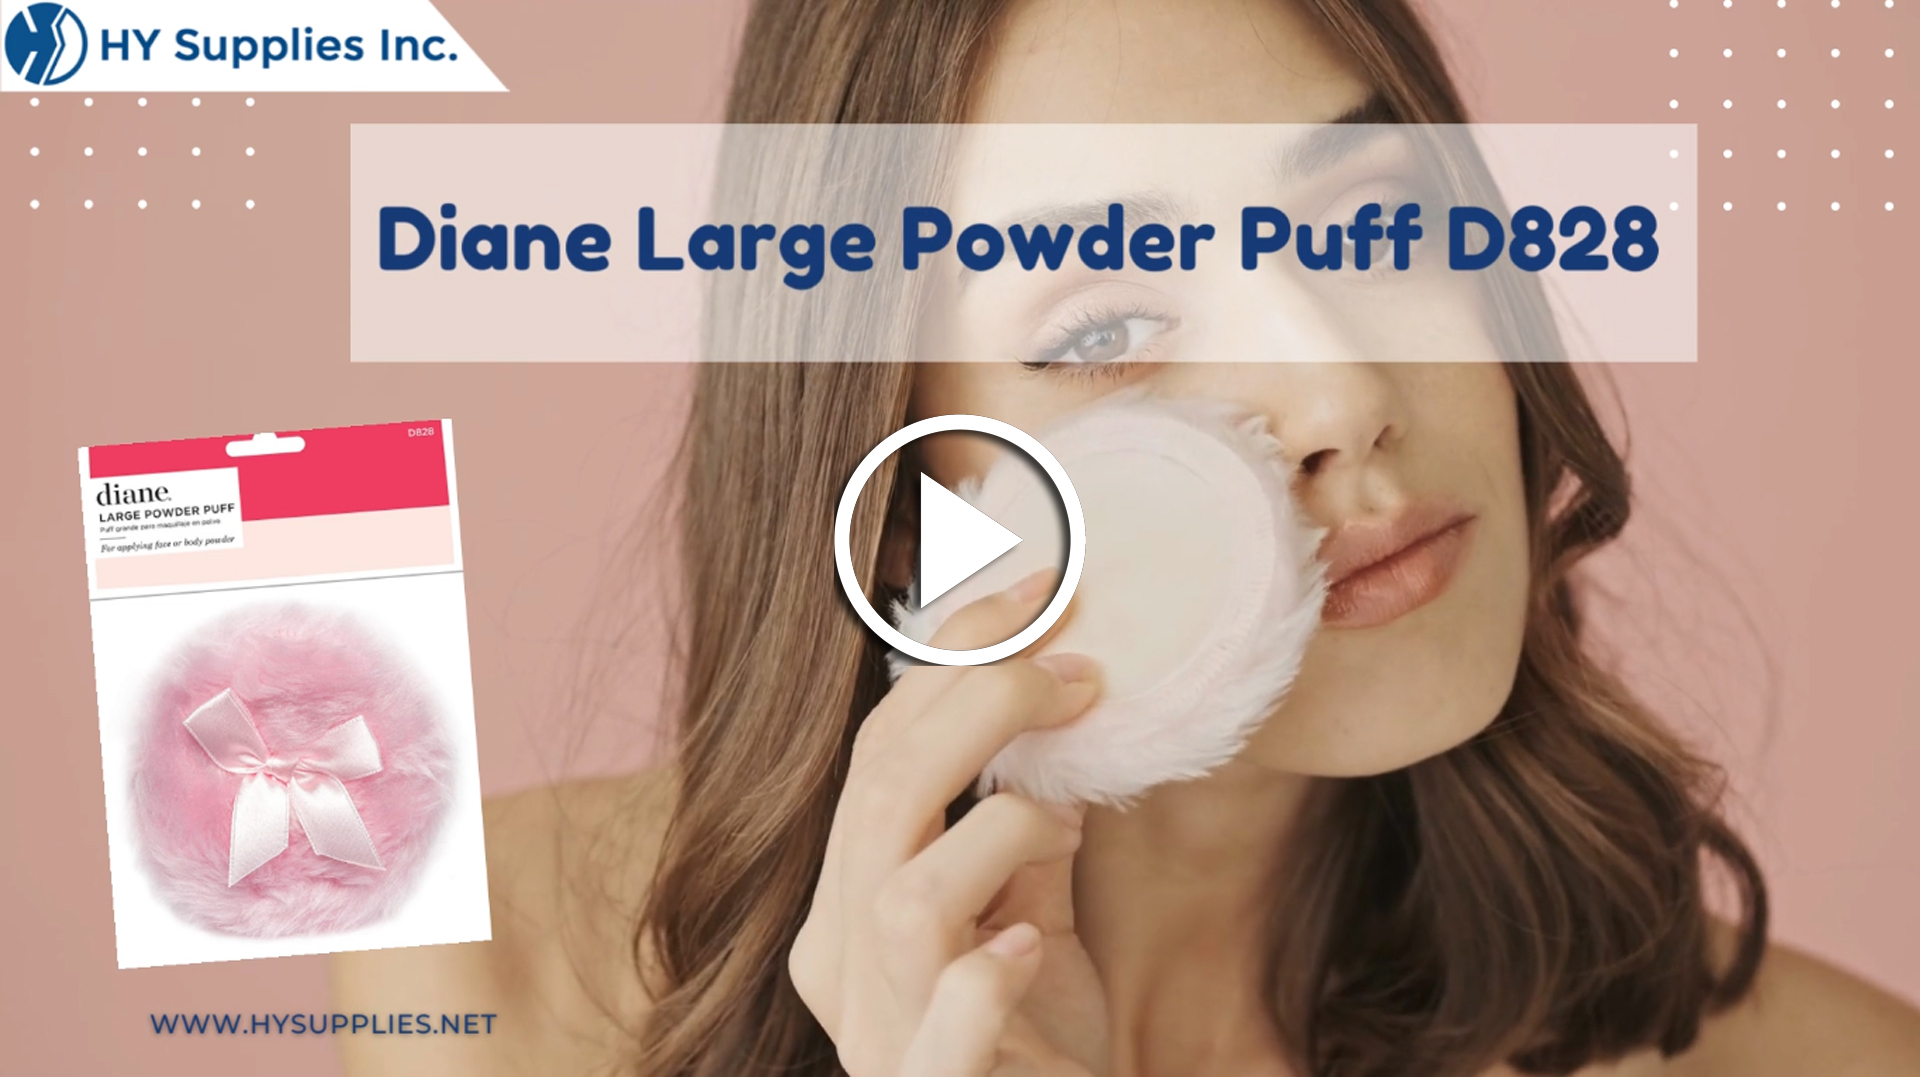 Diane Large Powder Puff D828 